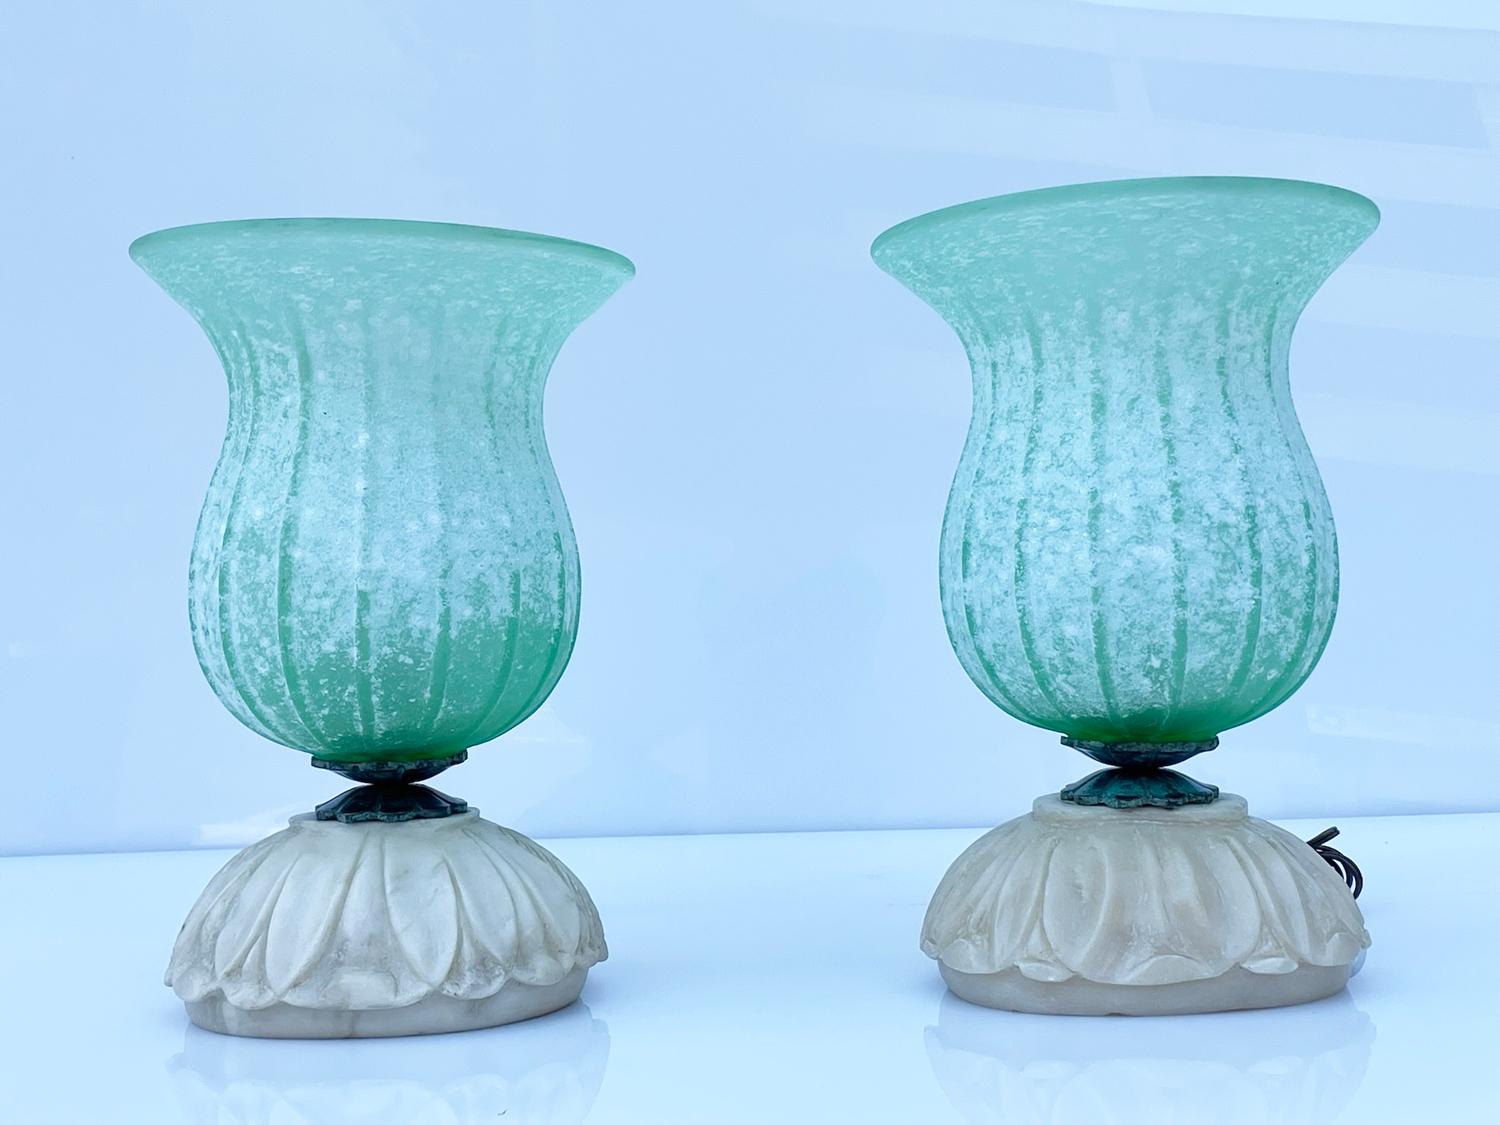 Voici nos exquises lampes de table en verre de Murano avec base en albâtre sculptée à la main, en provenance directe d'Italie et datant des années 1950. Ces pièces intemporelles sont un véritable témoignage du savoir-faire et de l'élégance de